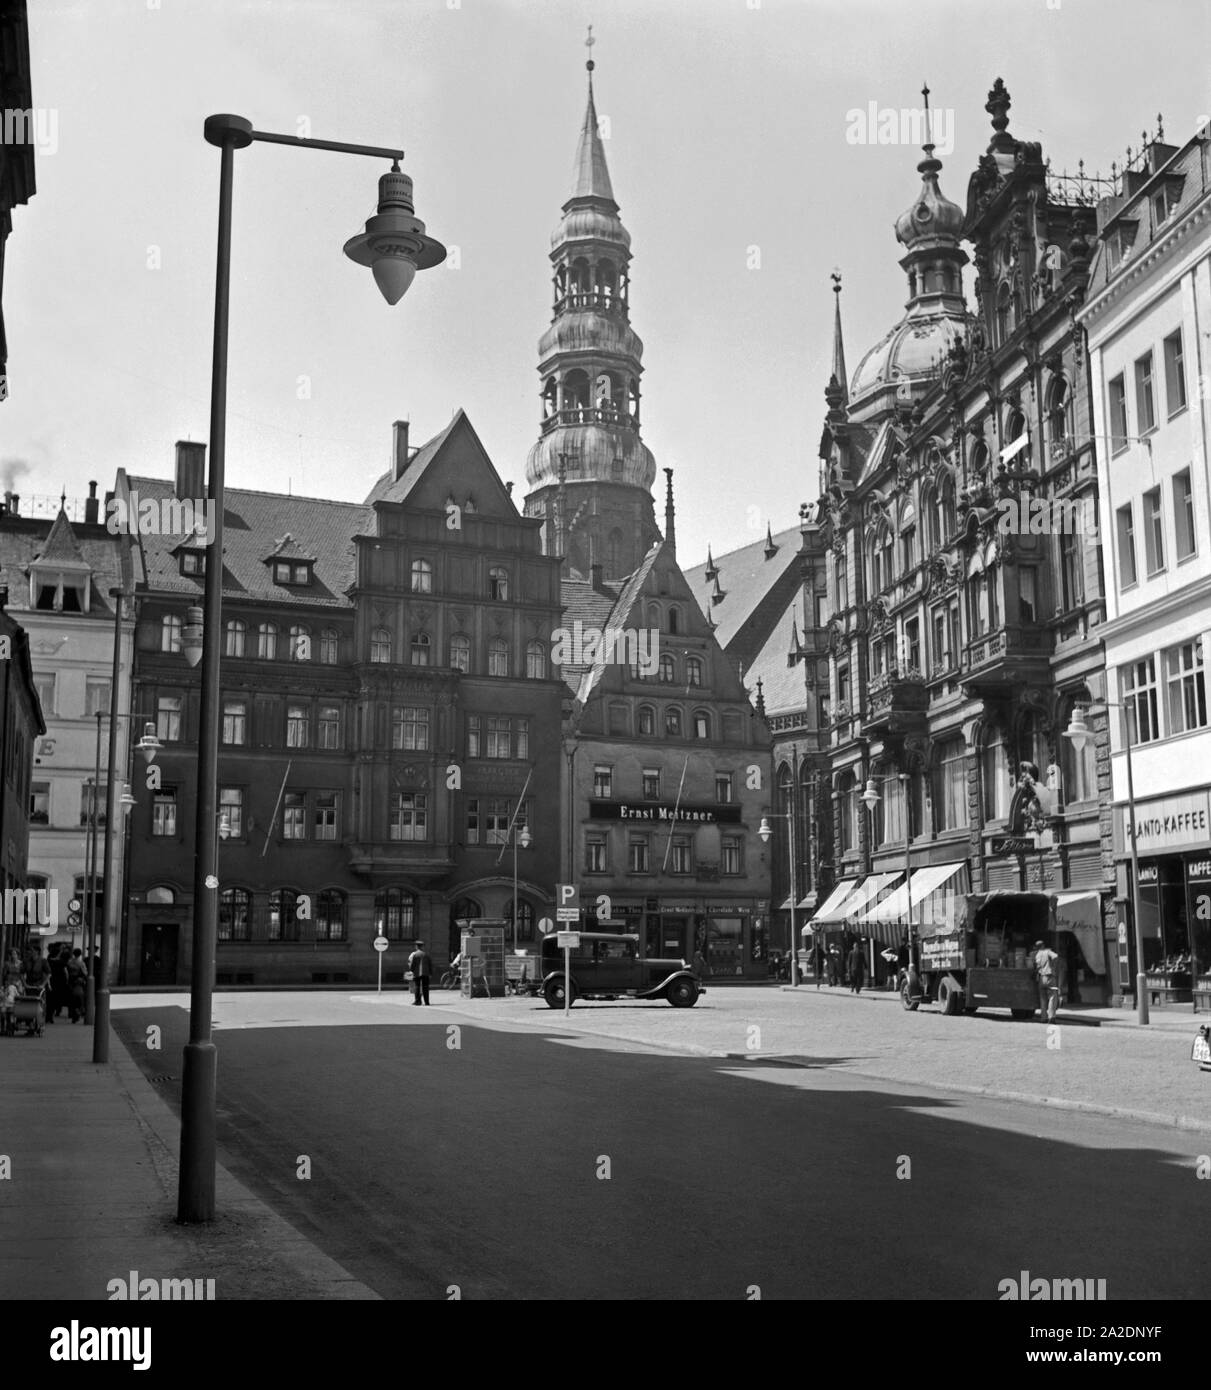 Der im Rasen in der Altstadt von Zwickau, Deutschland 1930 er Jahre. Le marché principal de la vieille ville de Zwickau, Allemagne 1930. Banque D'Images